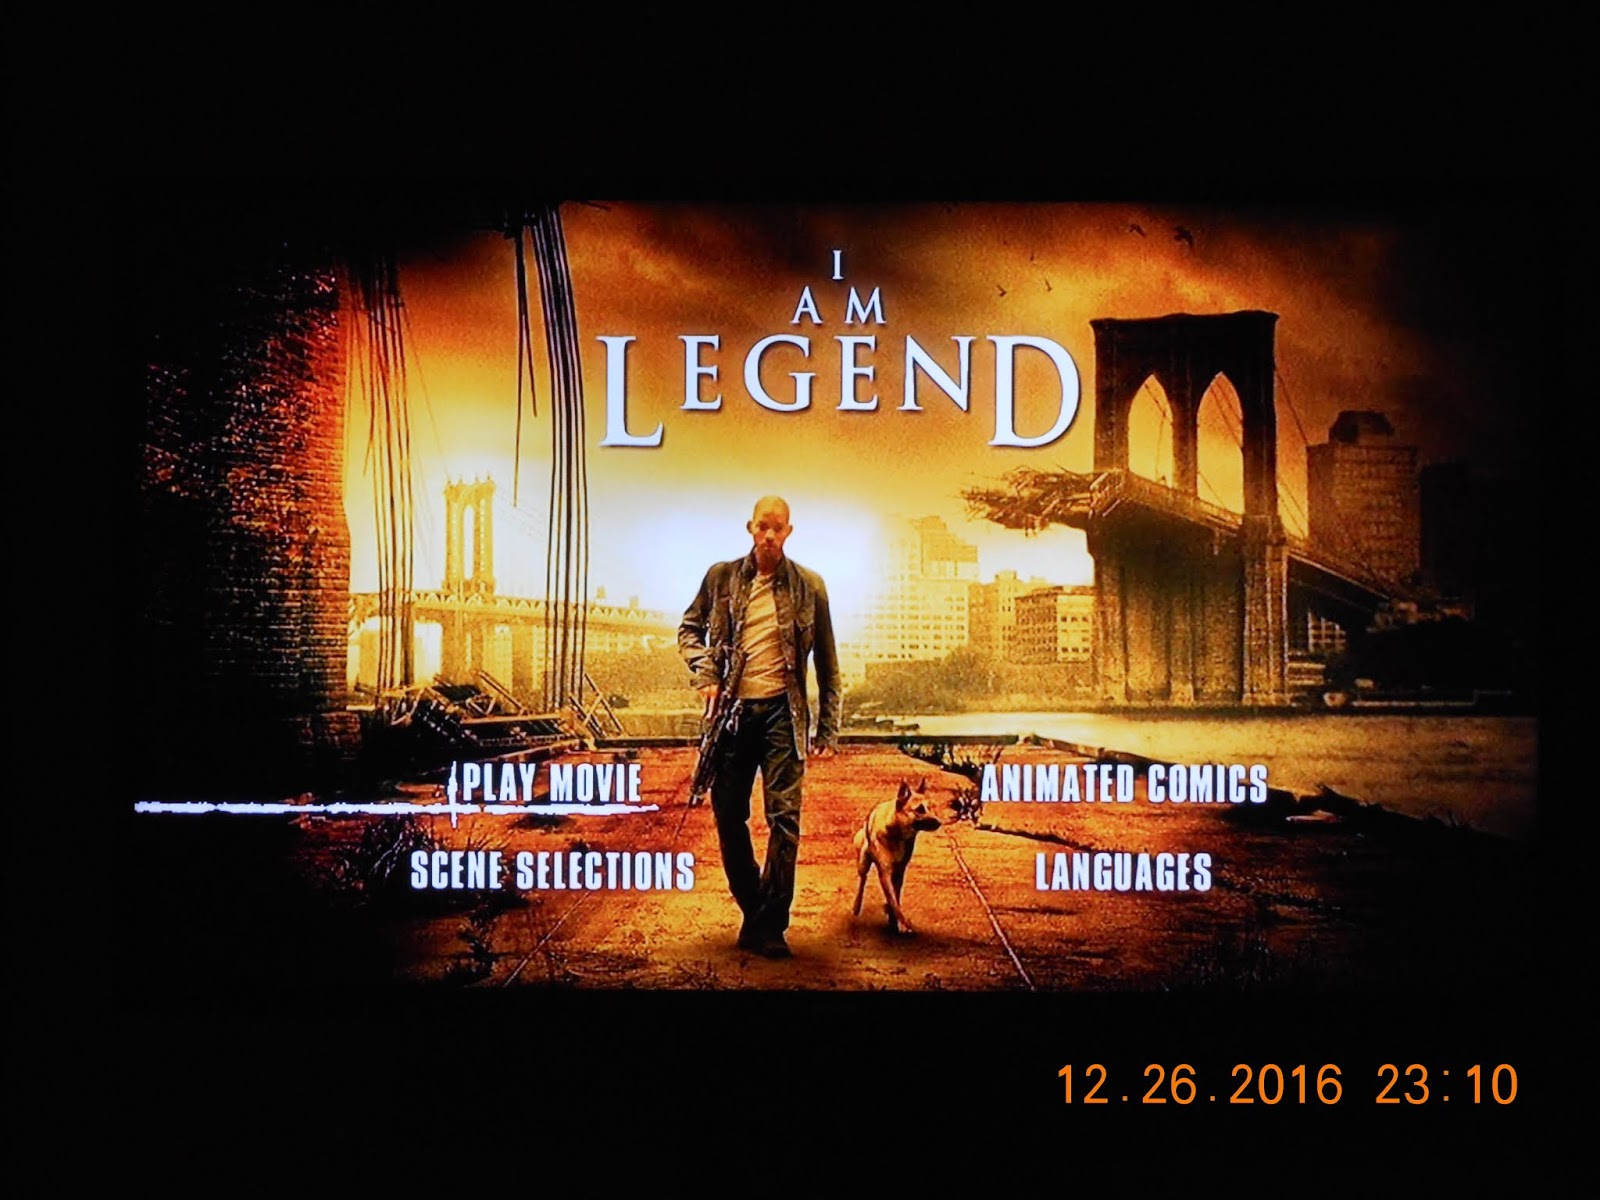 Ya legenda. I am Legend (2007). Уилл Смит я Легенда Постер. Я Легенда Постер.